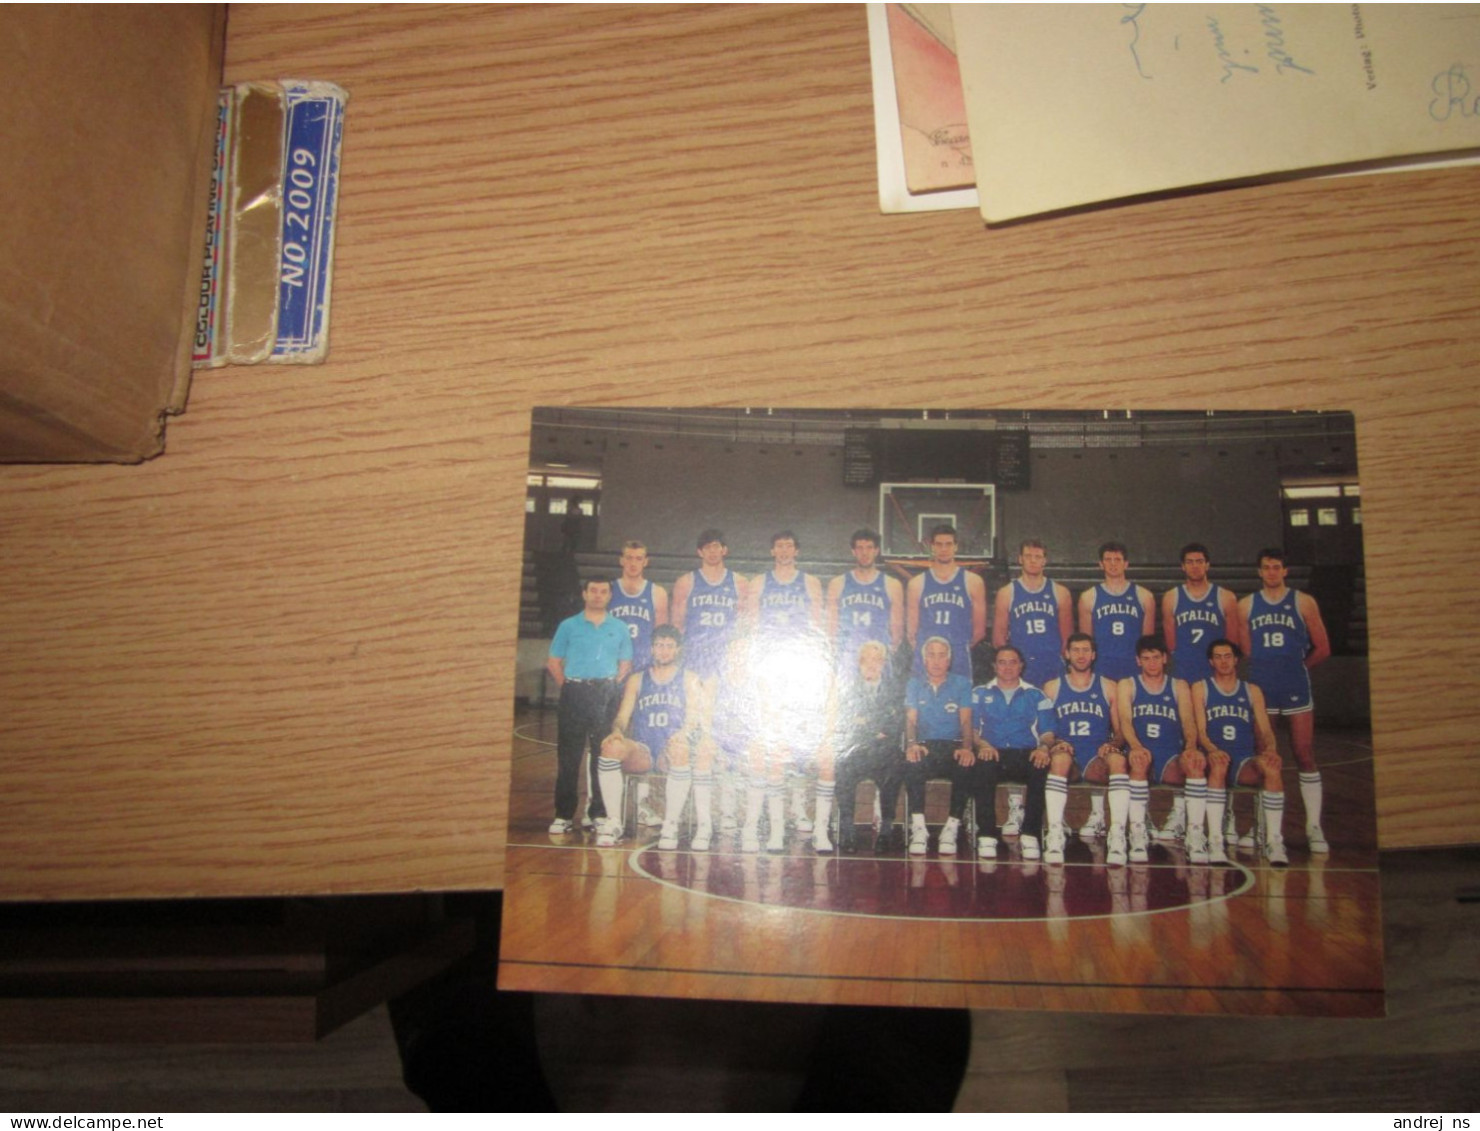 Italia Basketball Zagreb 89 - Basketball